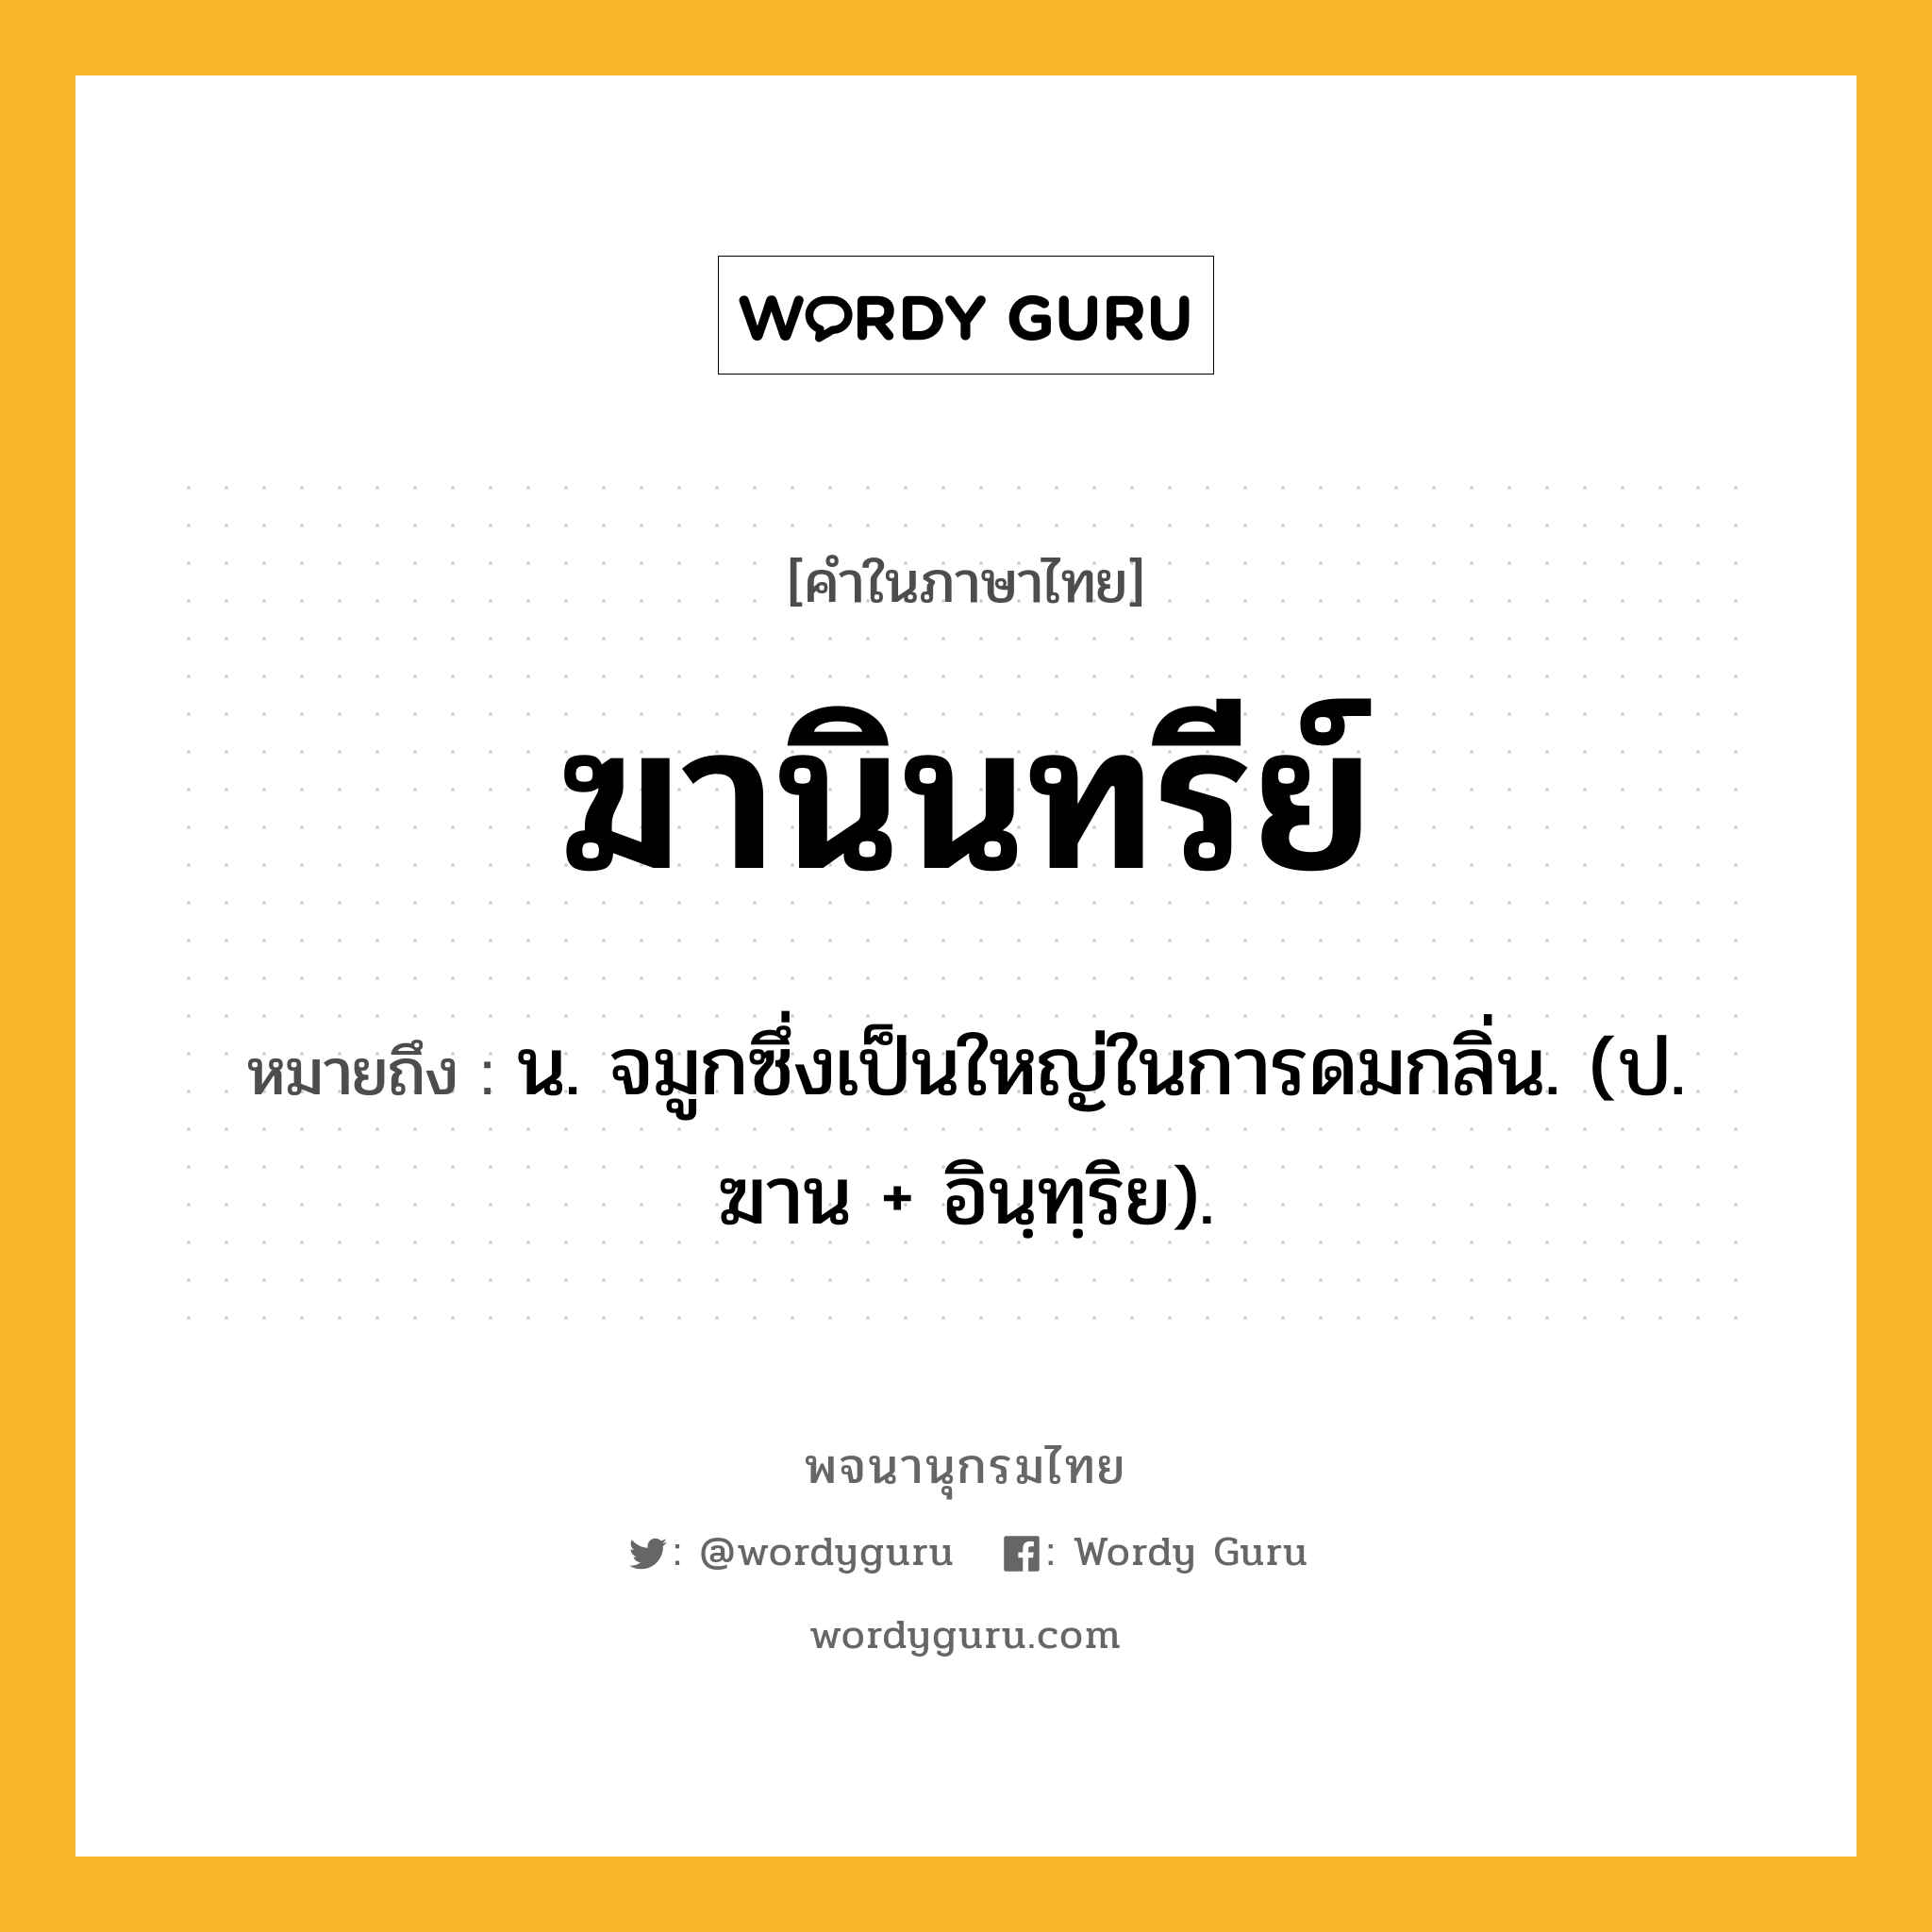 ฆานินทรีย์ ความหมาย หมายถึงอะไร?, คำในภาษาไทย ฆานินทรีย์ หมายถึง น. จมูกซึ่งเป็นใหญ่ในการดมกลิ่น. (ป. ฆาน + อินฺทฺริย).